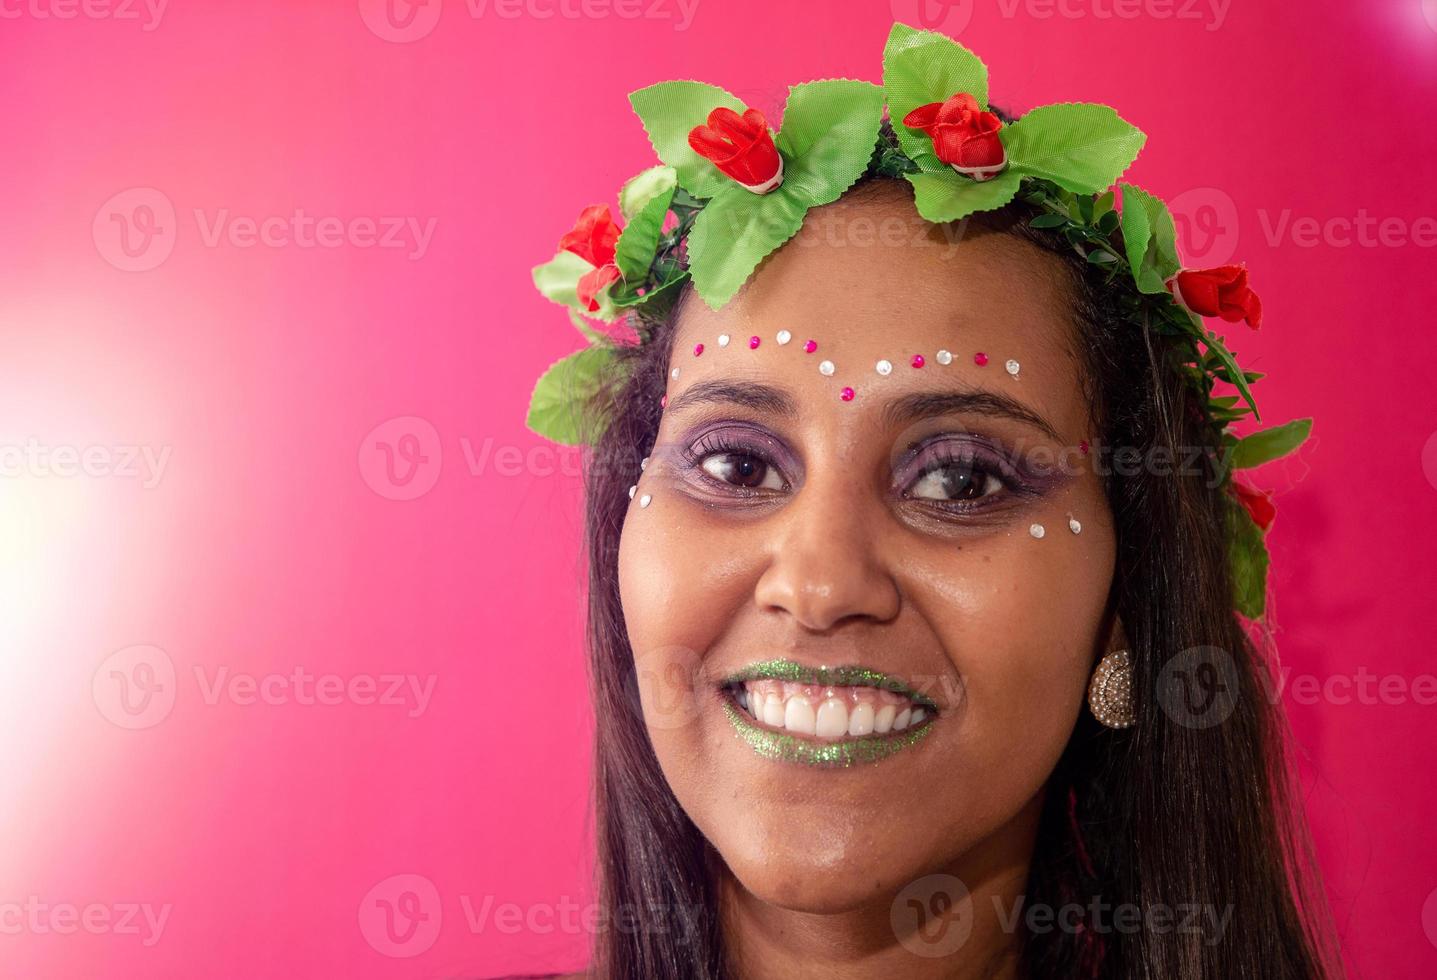 jovem feliz com máscara e confete na festa de carnaval. carnaval brasileiro foto